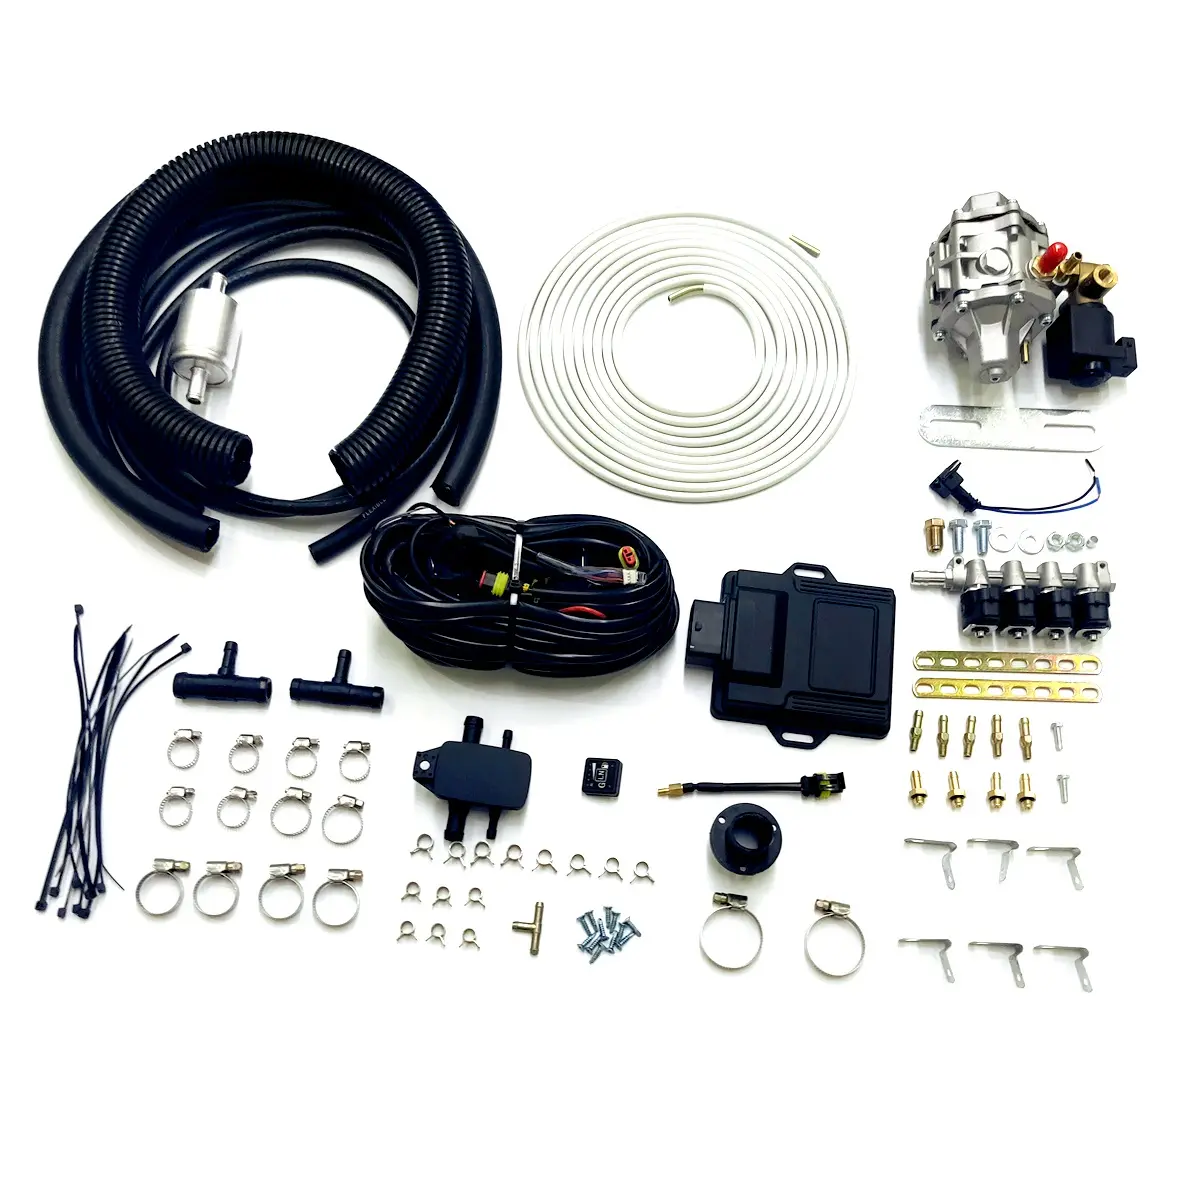 Sistema de inyección secuencial Efi Lpg Autogas para motocicletas, Kits de inyección de combustible de 120cc, cilindro único